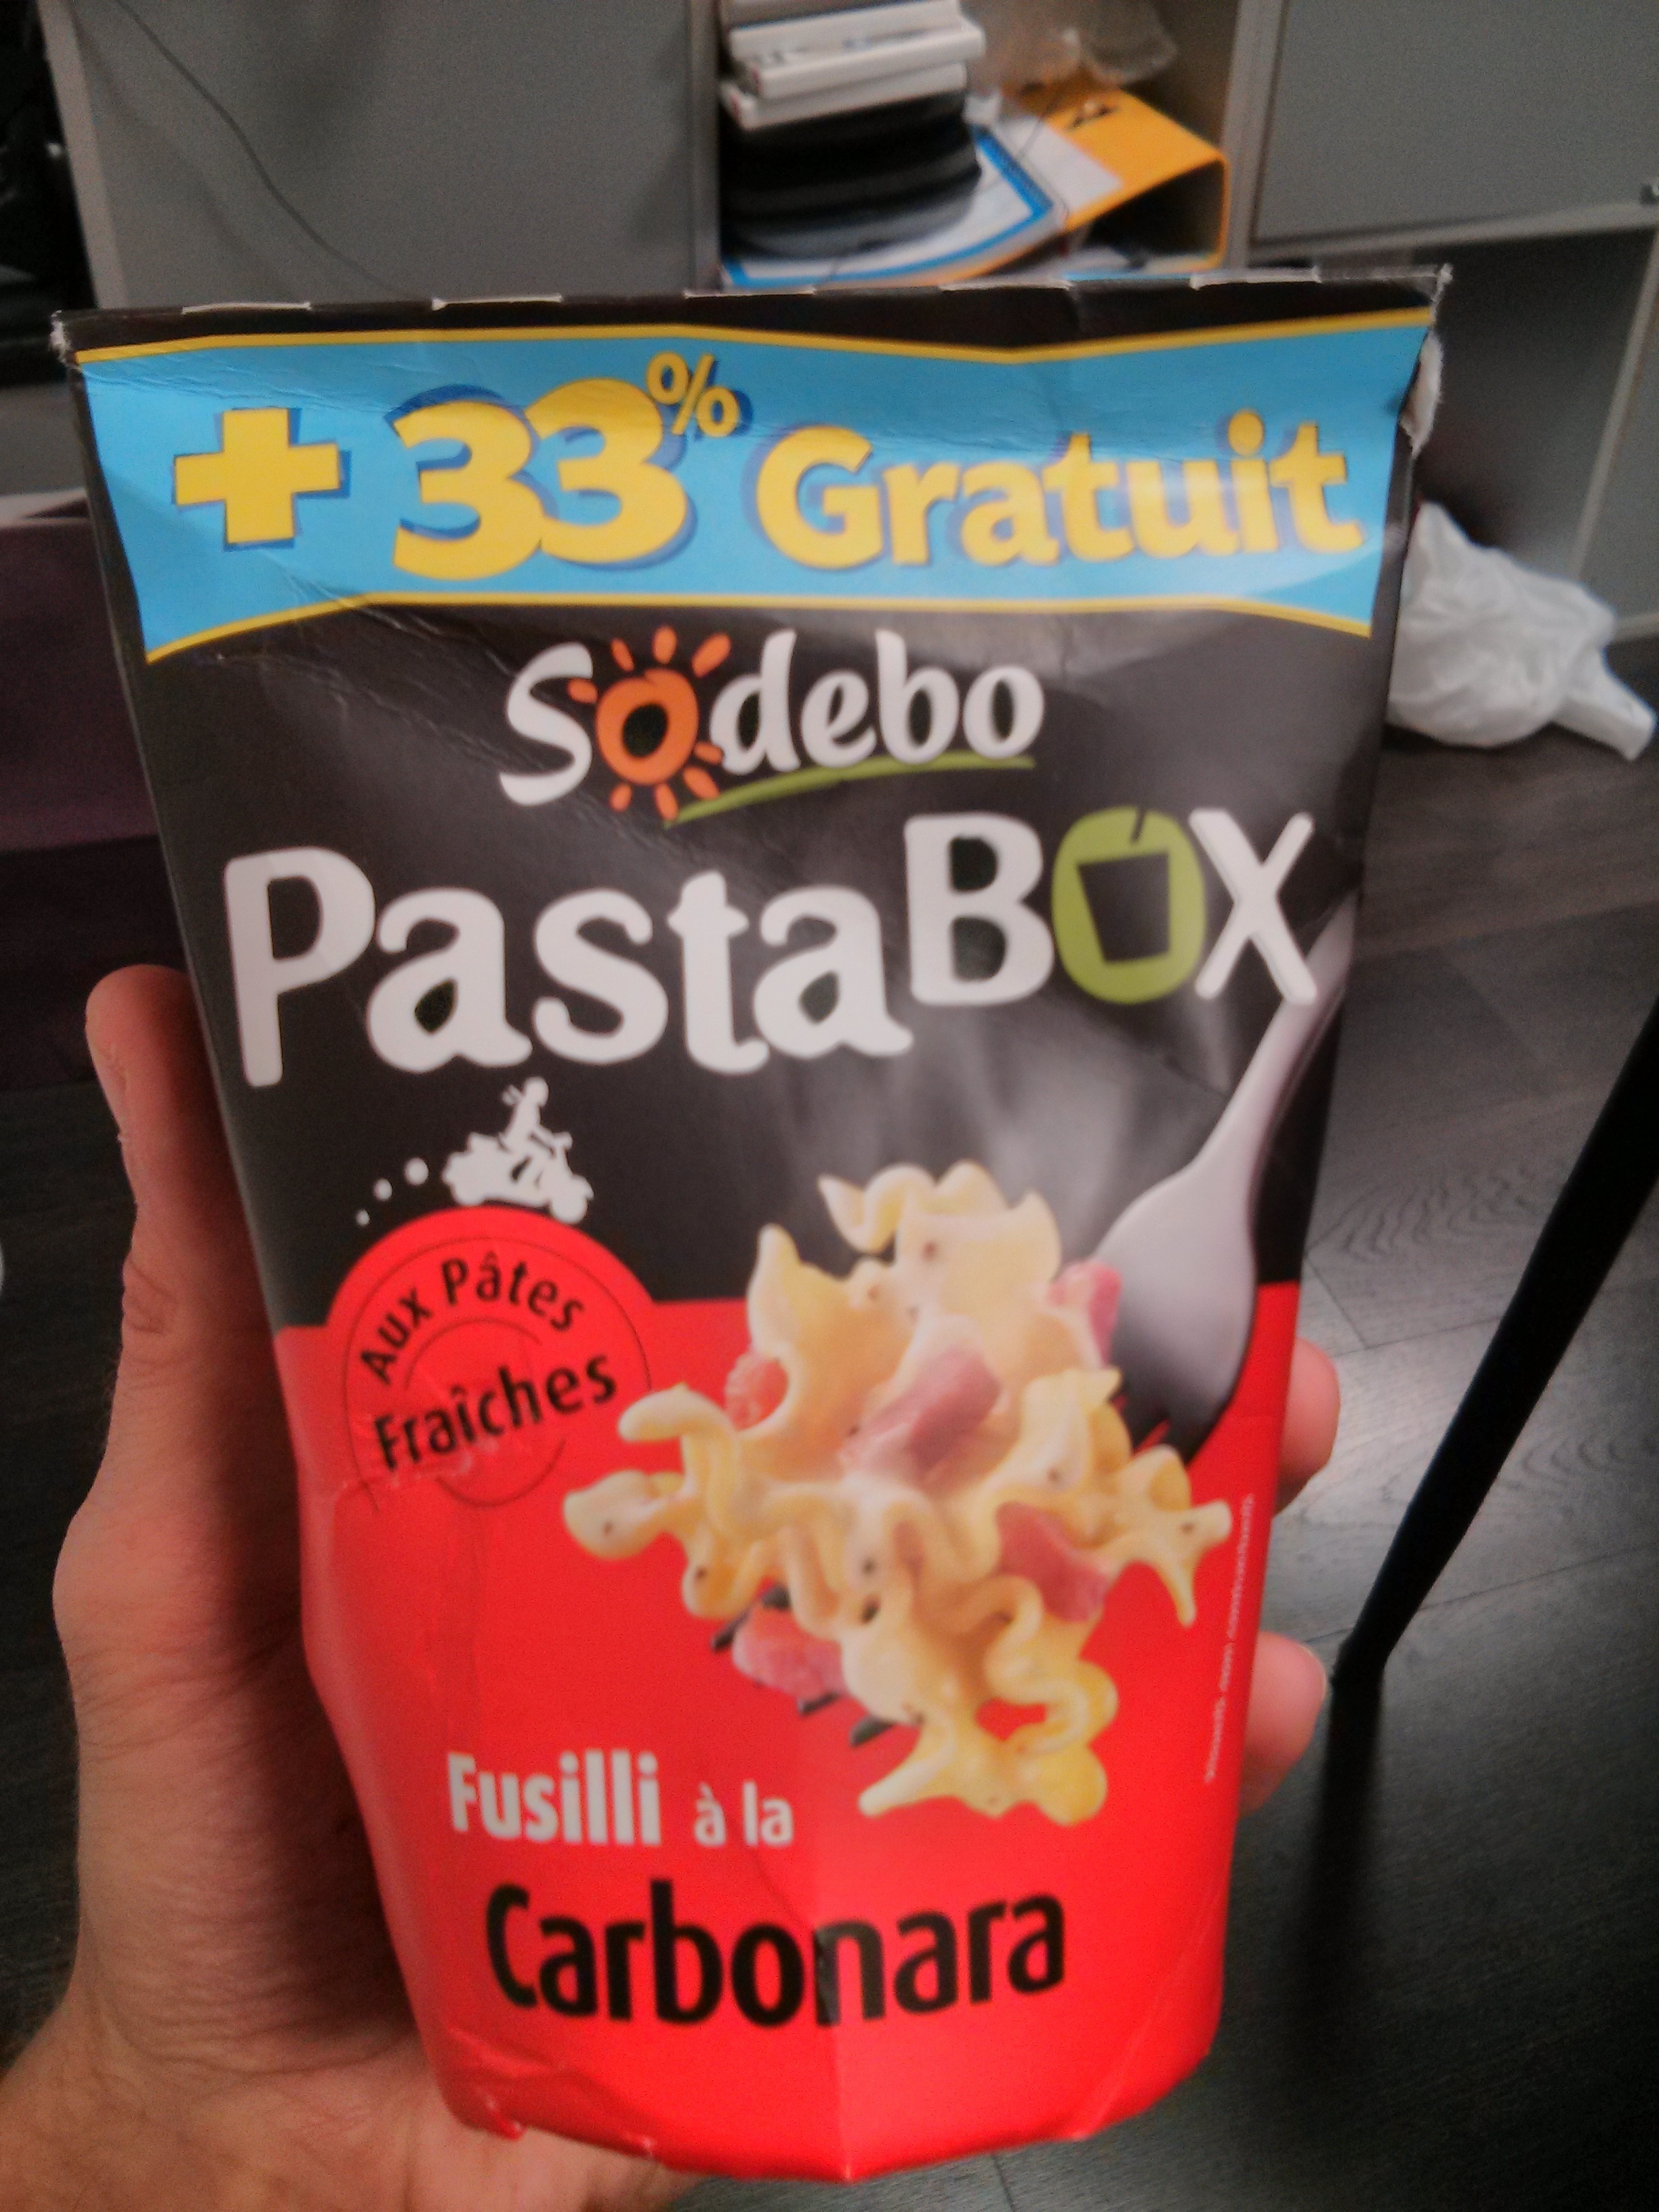 PastaBOX (Fusilli à la Carbonara aux pâtes fraîches) + 33 % Gratuit - Product - fr